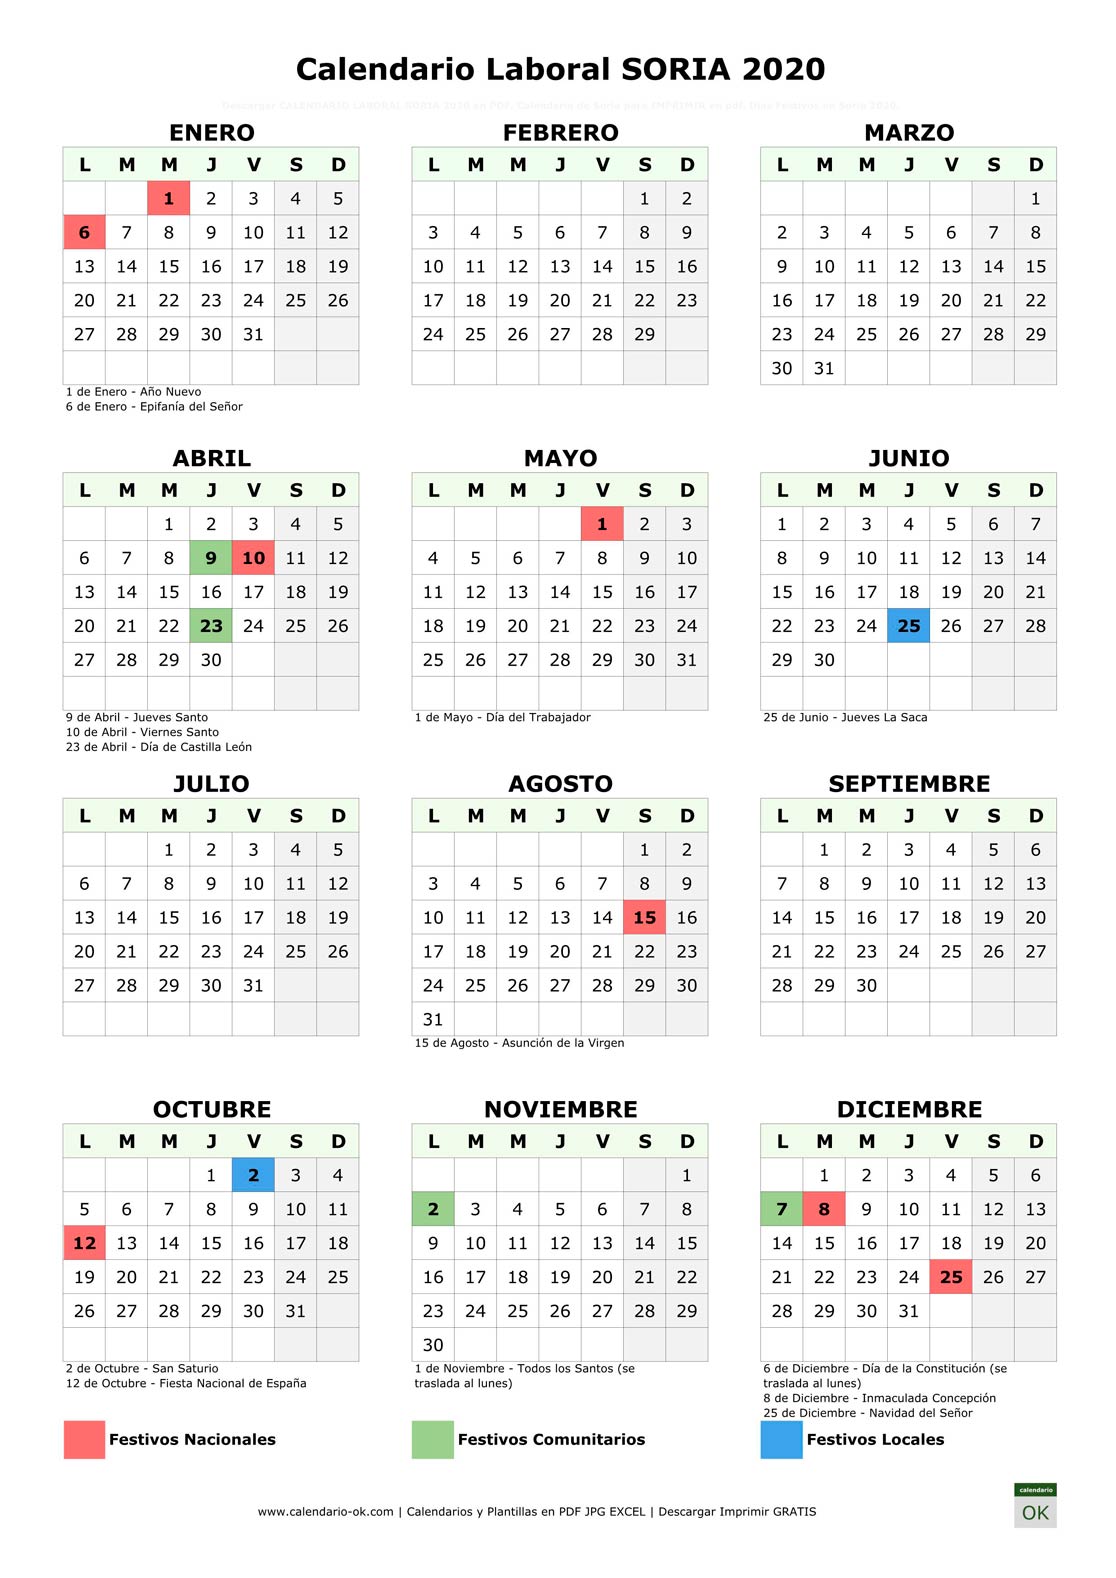 Calendario Laboral SORIA 2020